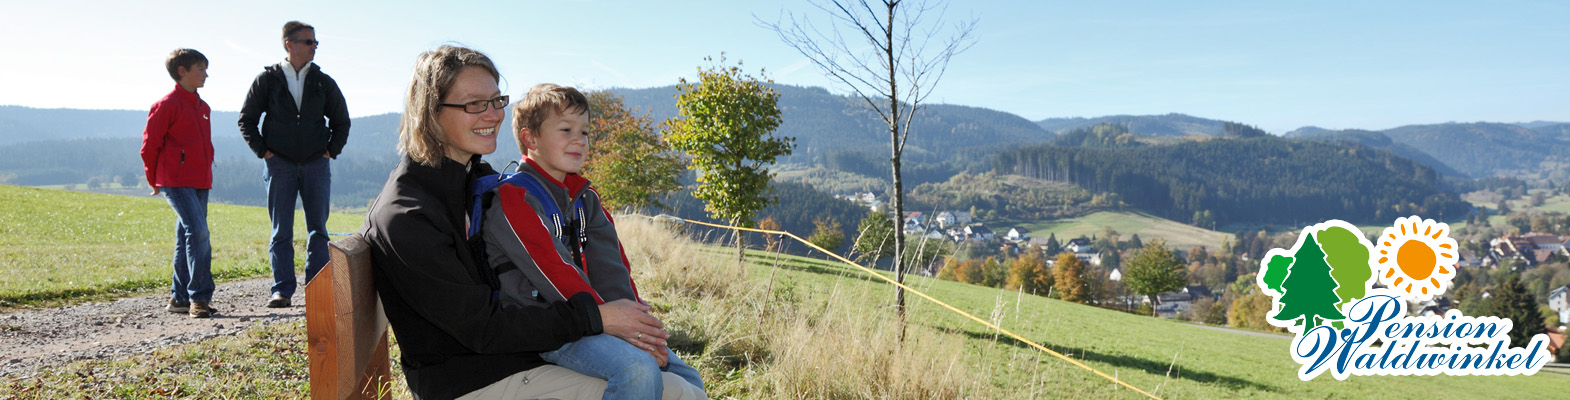 Pension Waldwinkel - Wandern im Hochschwarzwald